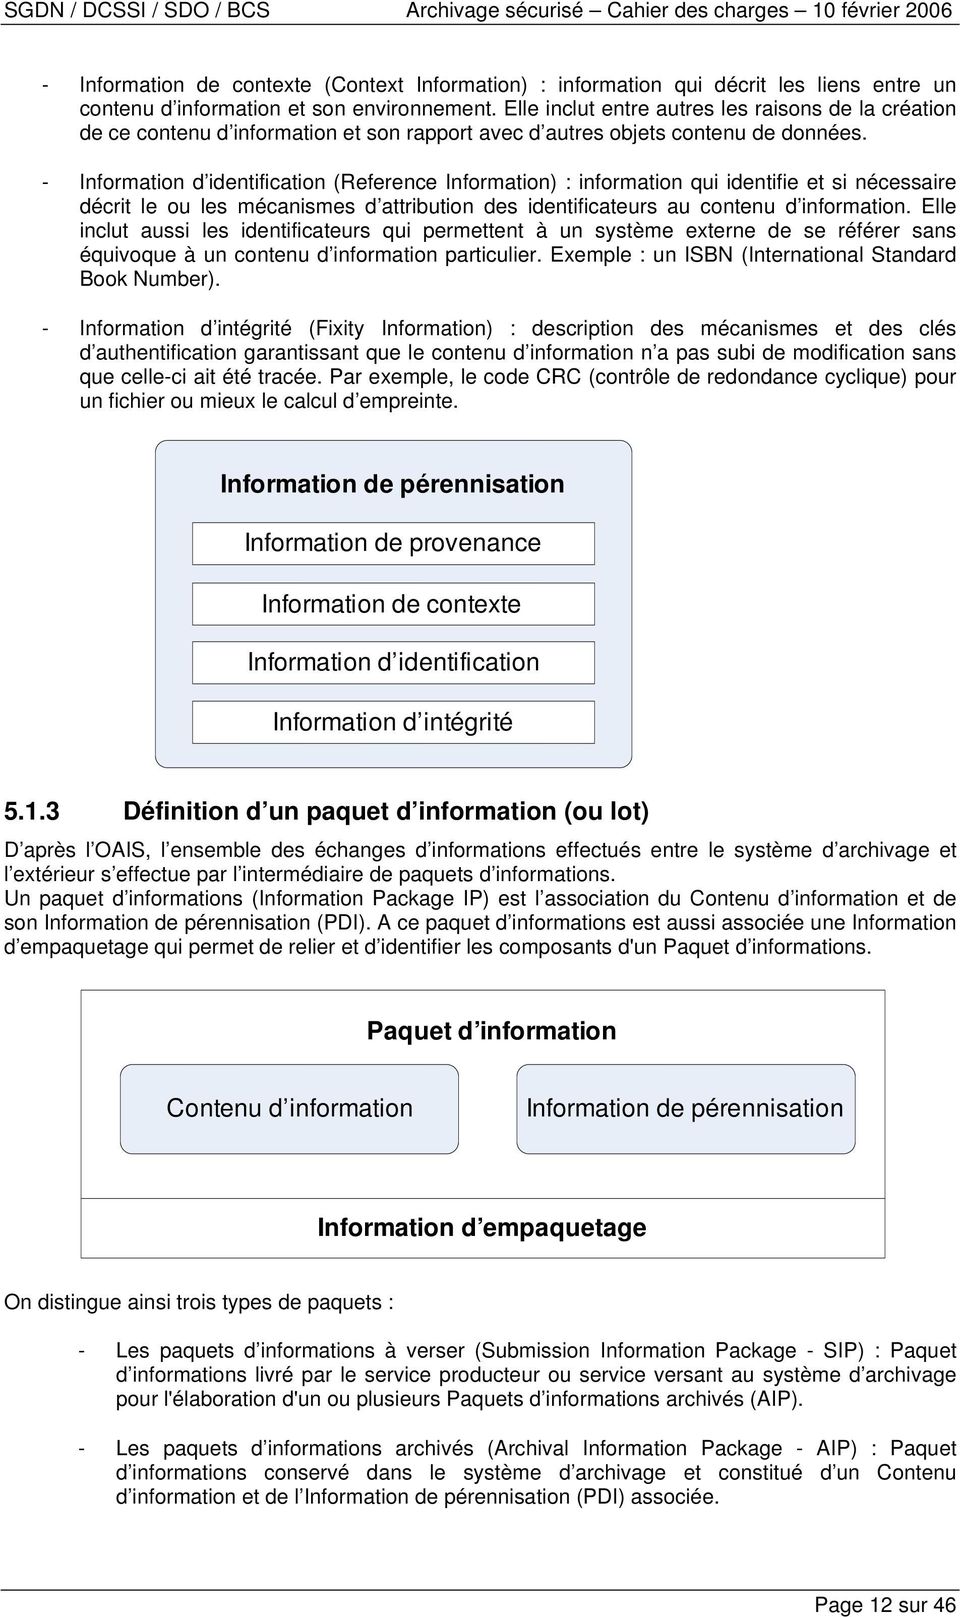 - Information d identification (Reference Information) : information qui identifie et si nécessaire décrit le ou les mécanismes d attribution des identificateurs au contenu d information.